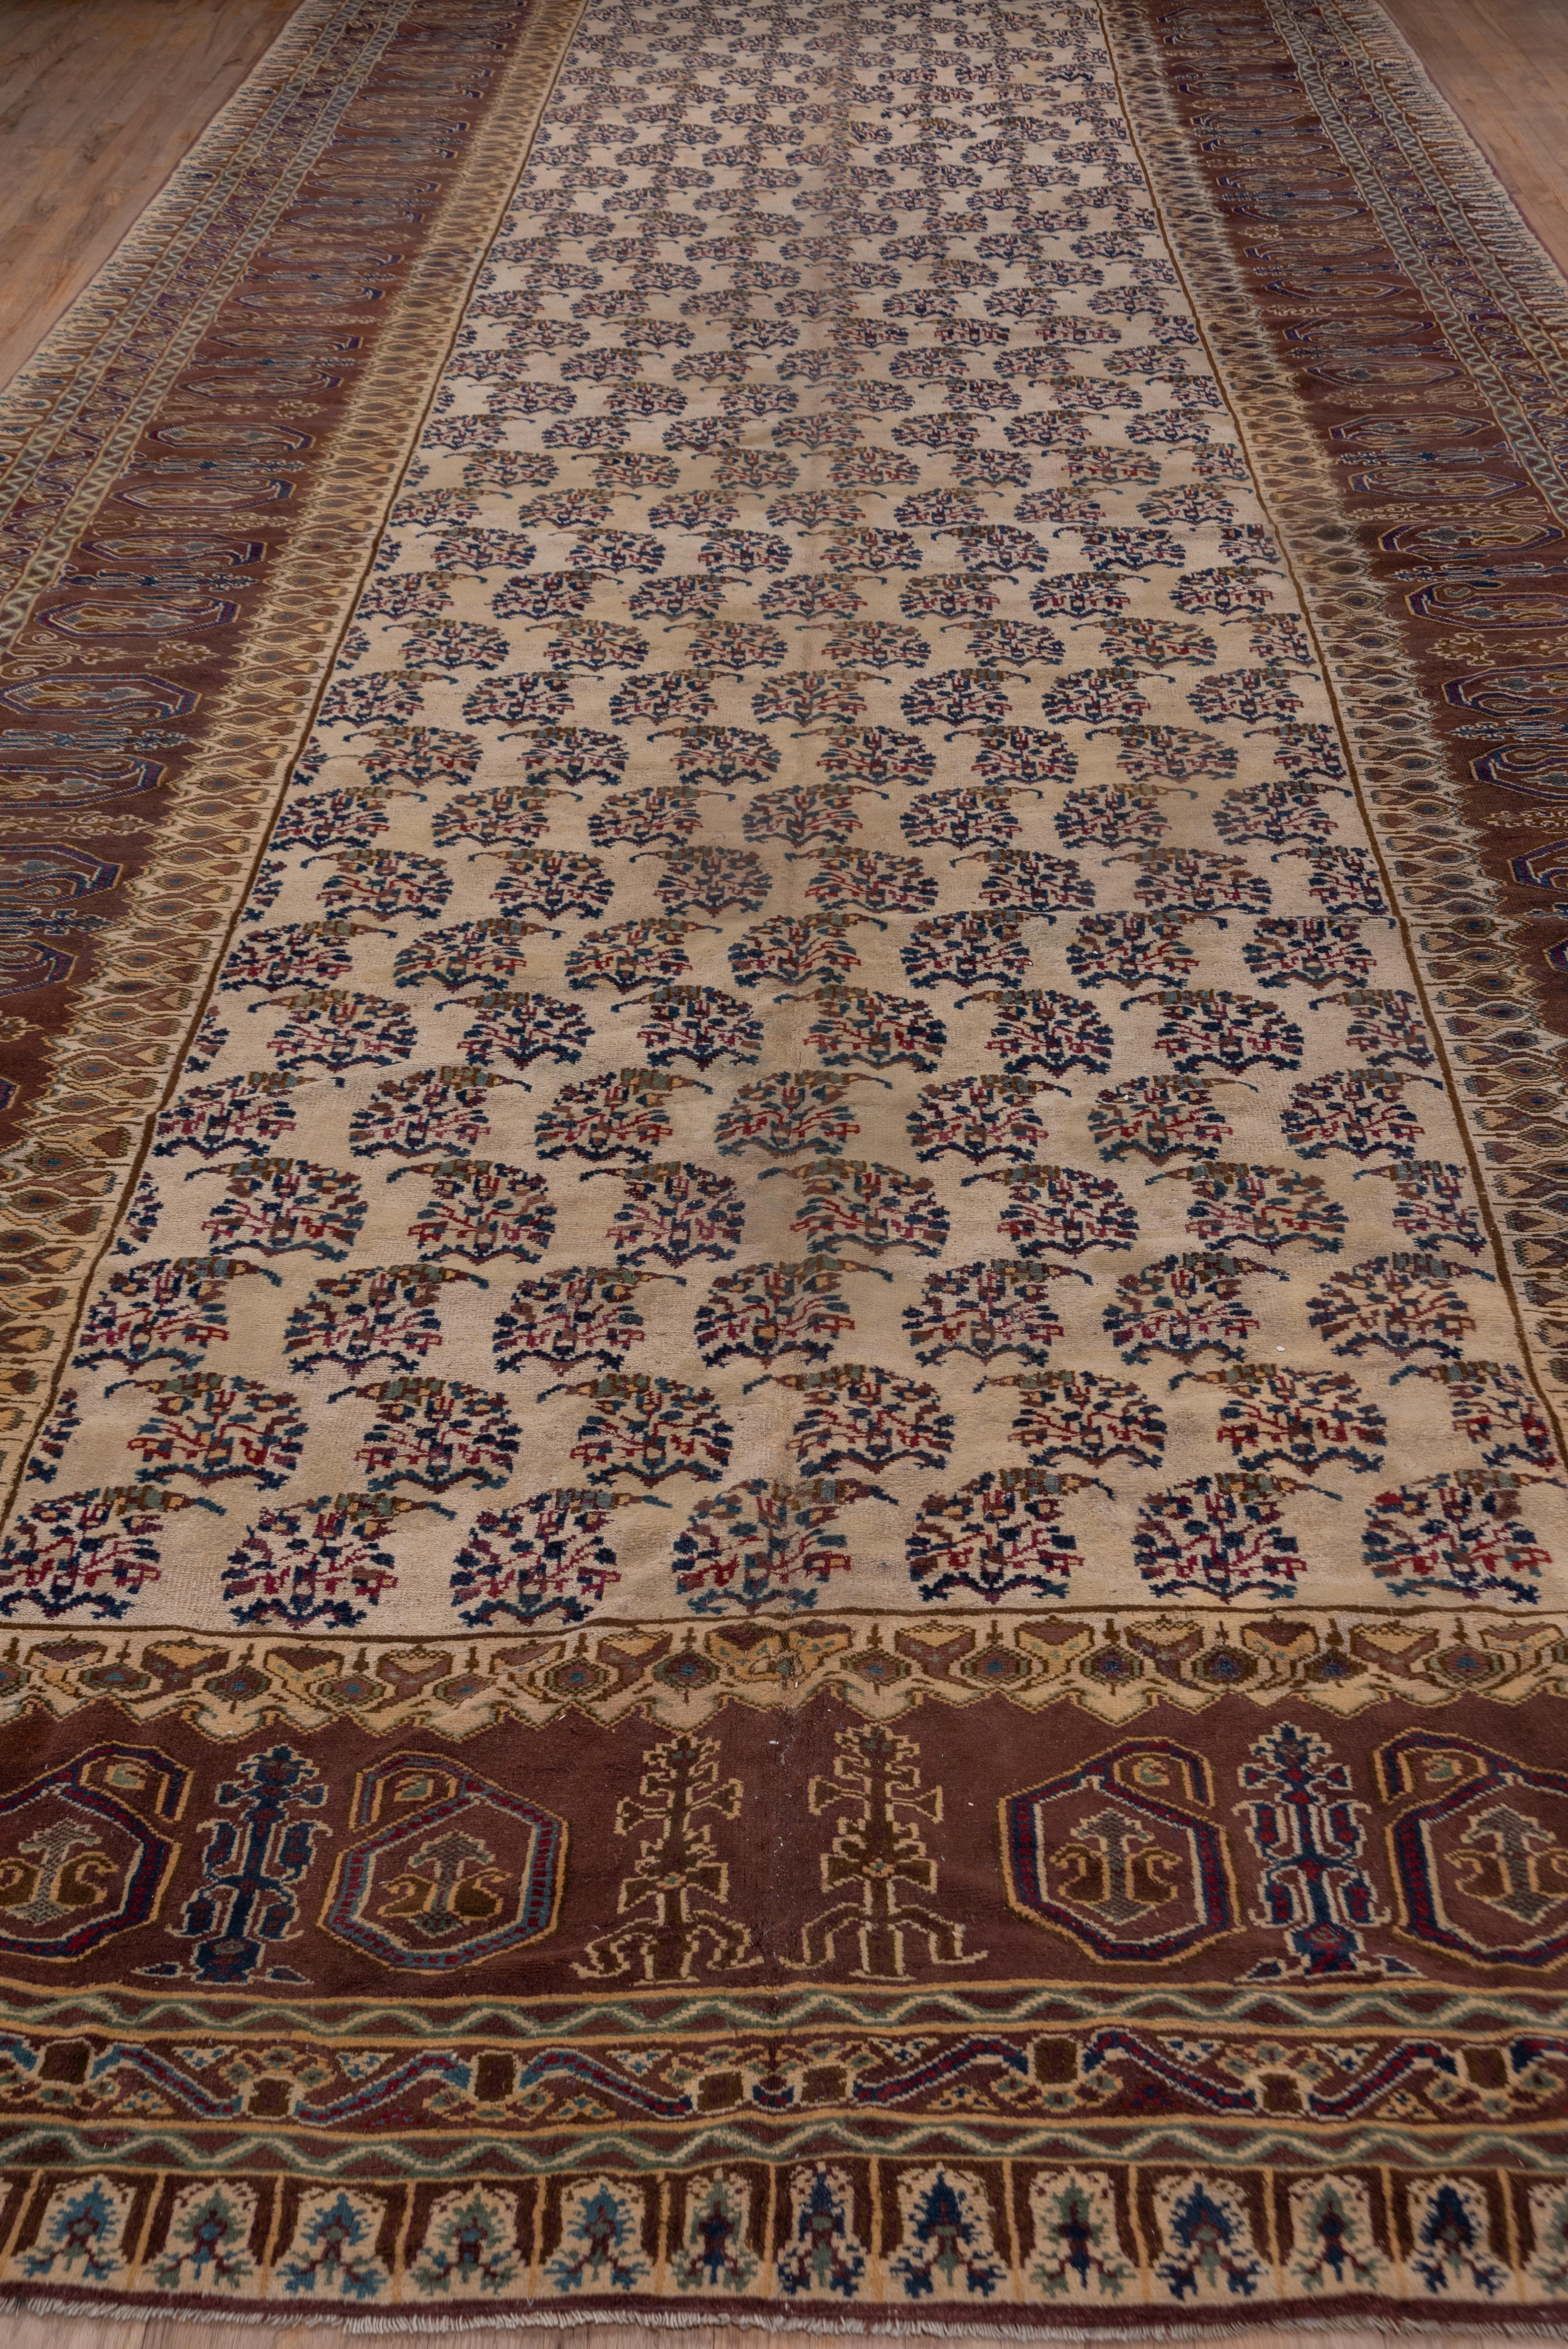 Dieser nordindische Werkstattteppich zeigt ein cremefarbenes Feld mit umgekehrten Reihen aus dunkelblauen Blumenbottichen. Das Botteh-Thema setzt sich in der rotbraunen, breiten Hauptbordüre mit großen, facettierten Zapfen fort. Der Zustand ist im